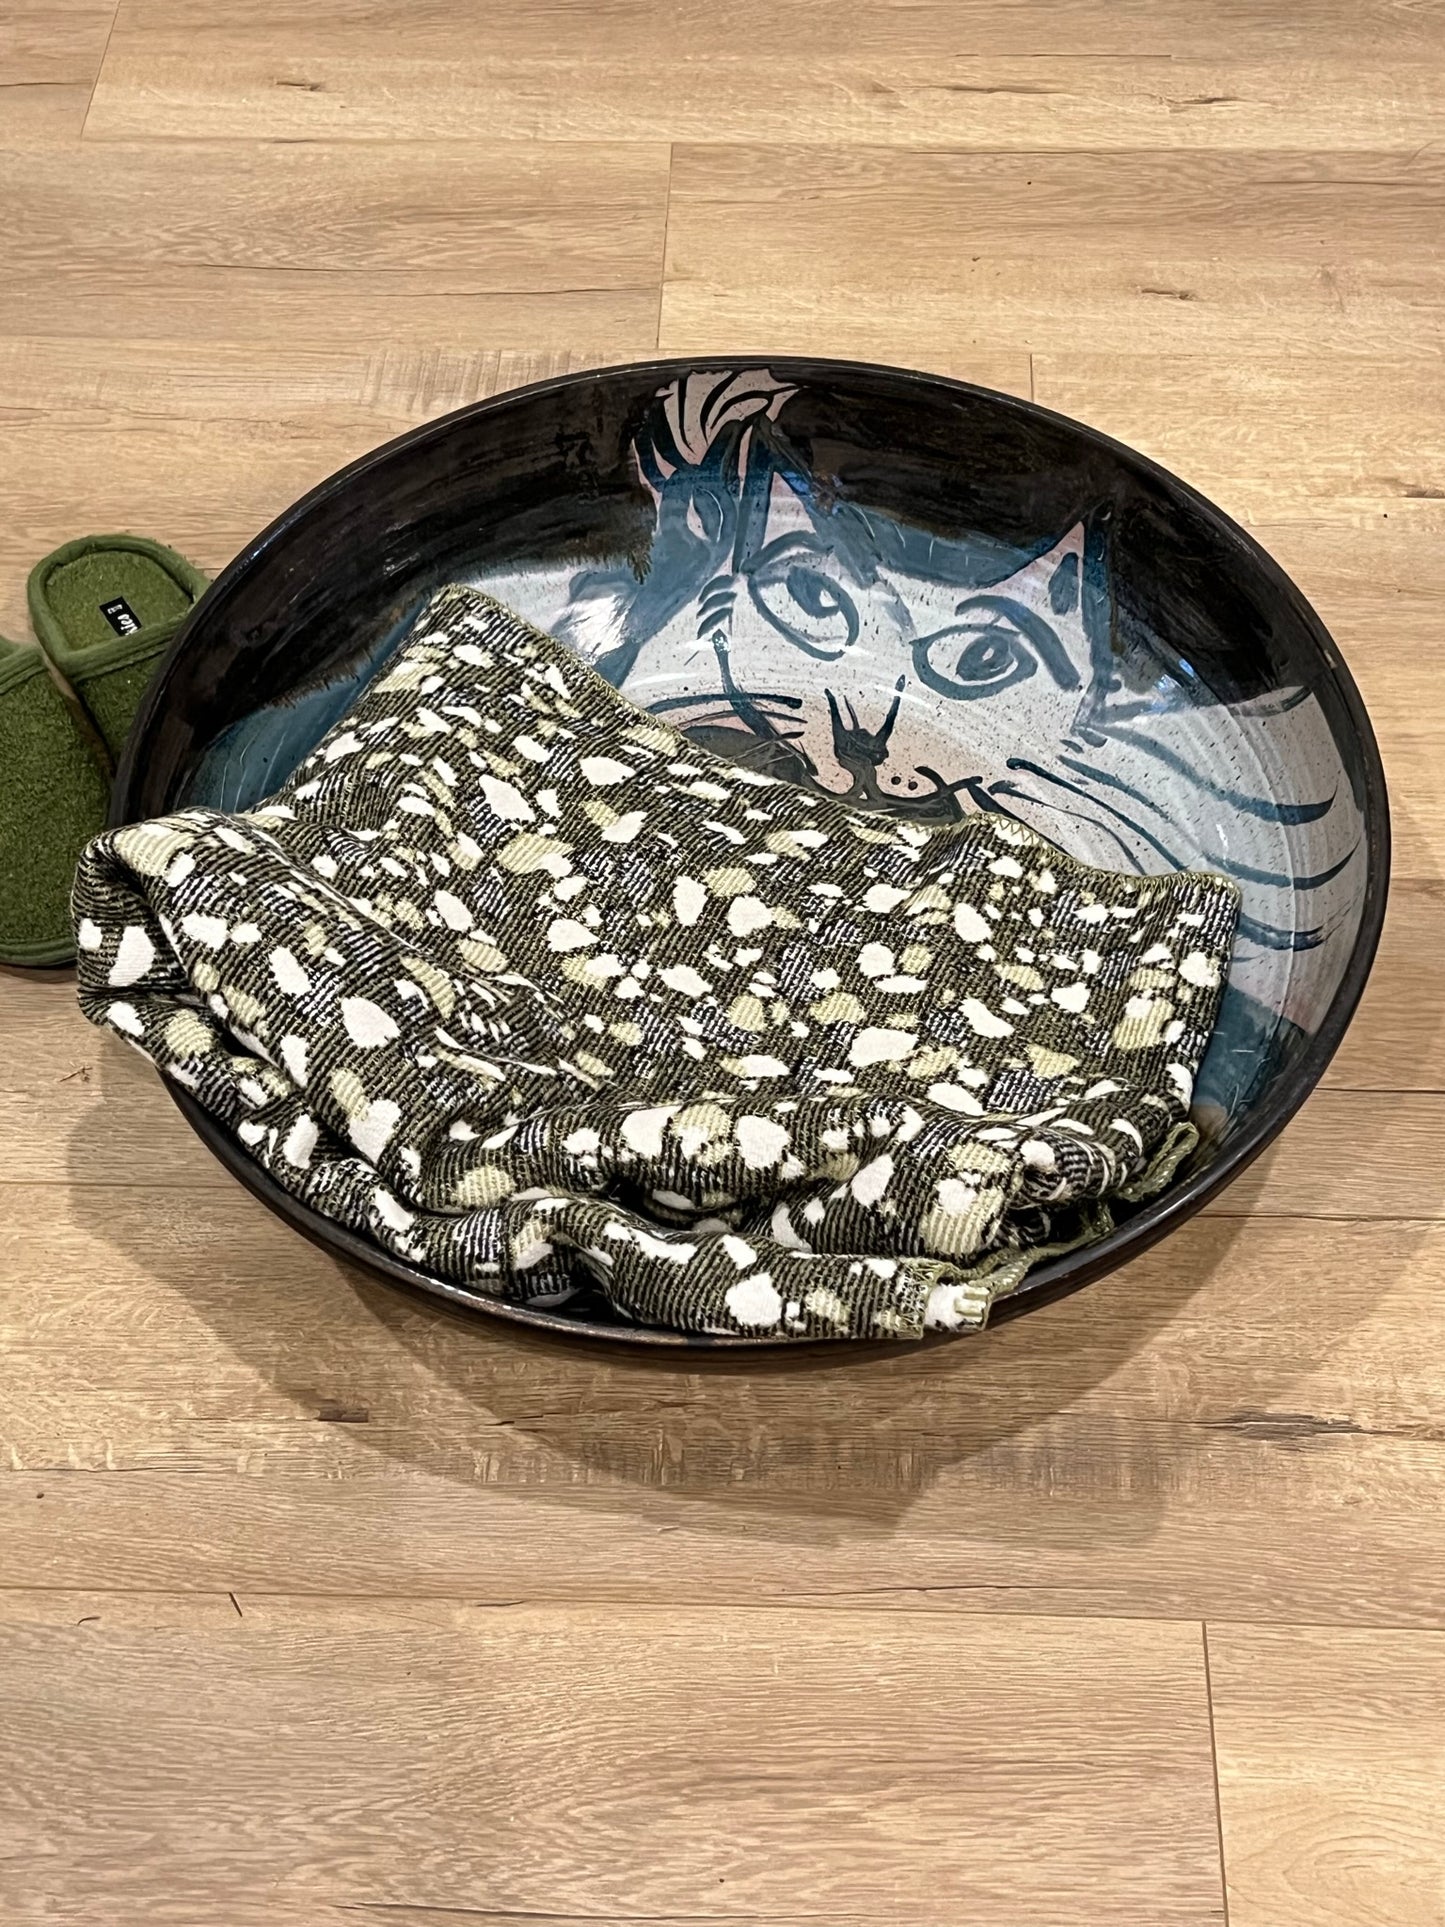 Shoshi & Friends - Giant Cat Bowl